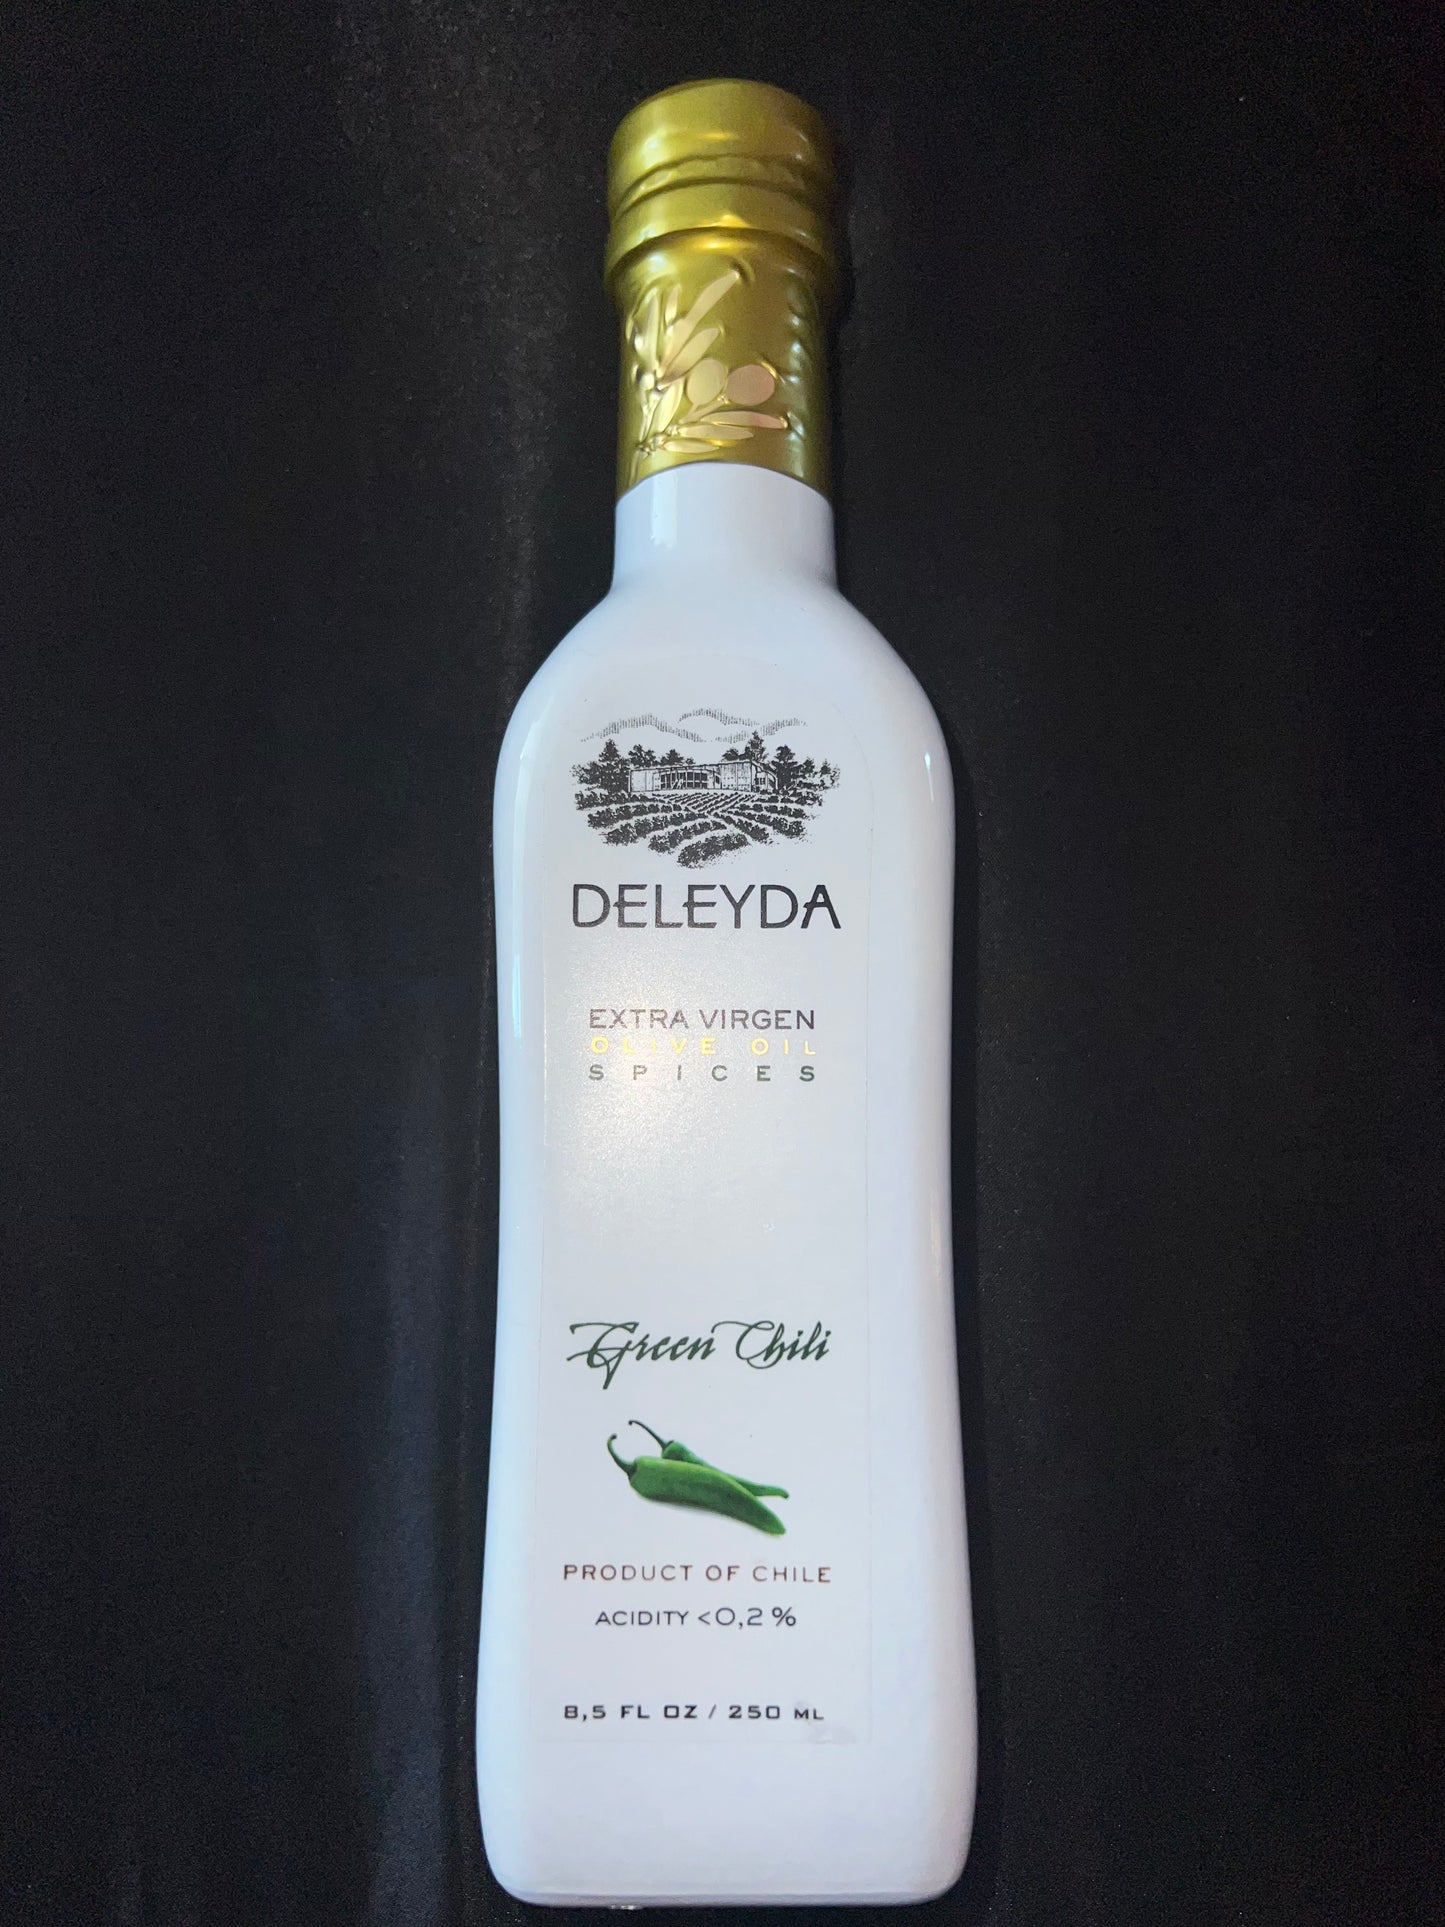 Aceite de oliva Deleyda sabores 250ml